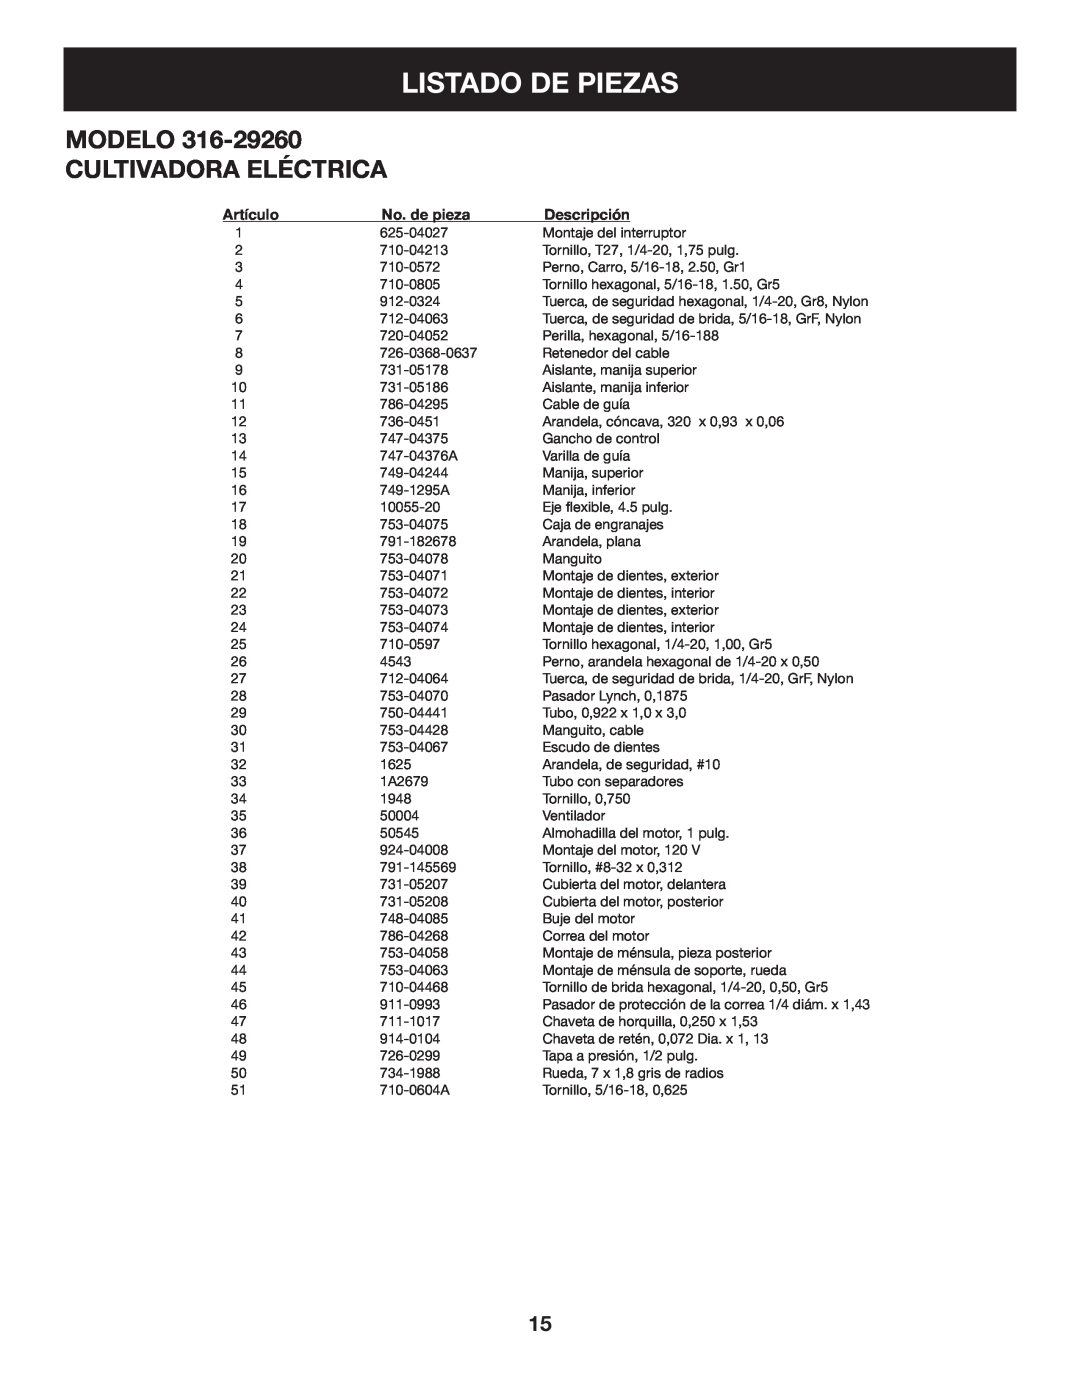 Craftsman 316.2926 manual Listado De Piezas, Modelo Cultivadora Eléctrica, Artículo, No. de pieza, Descripción 